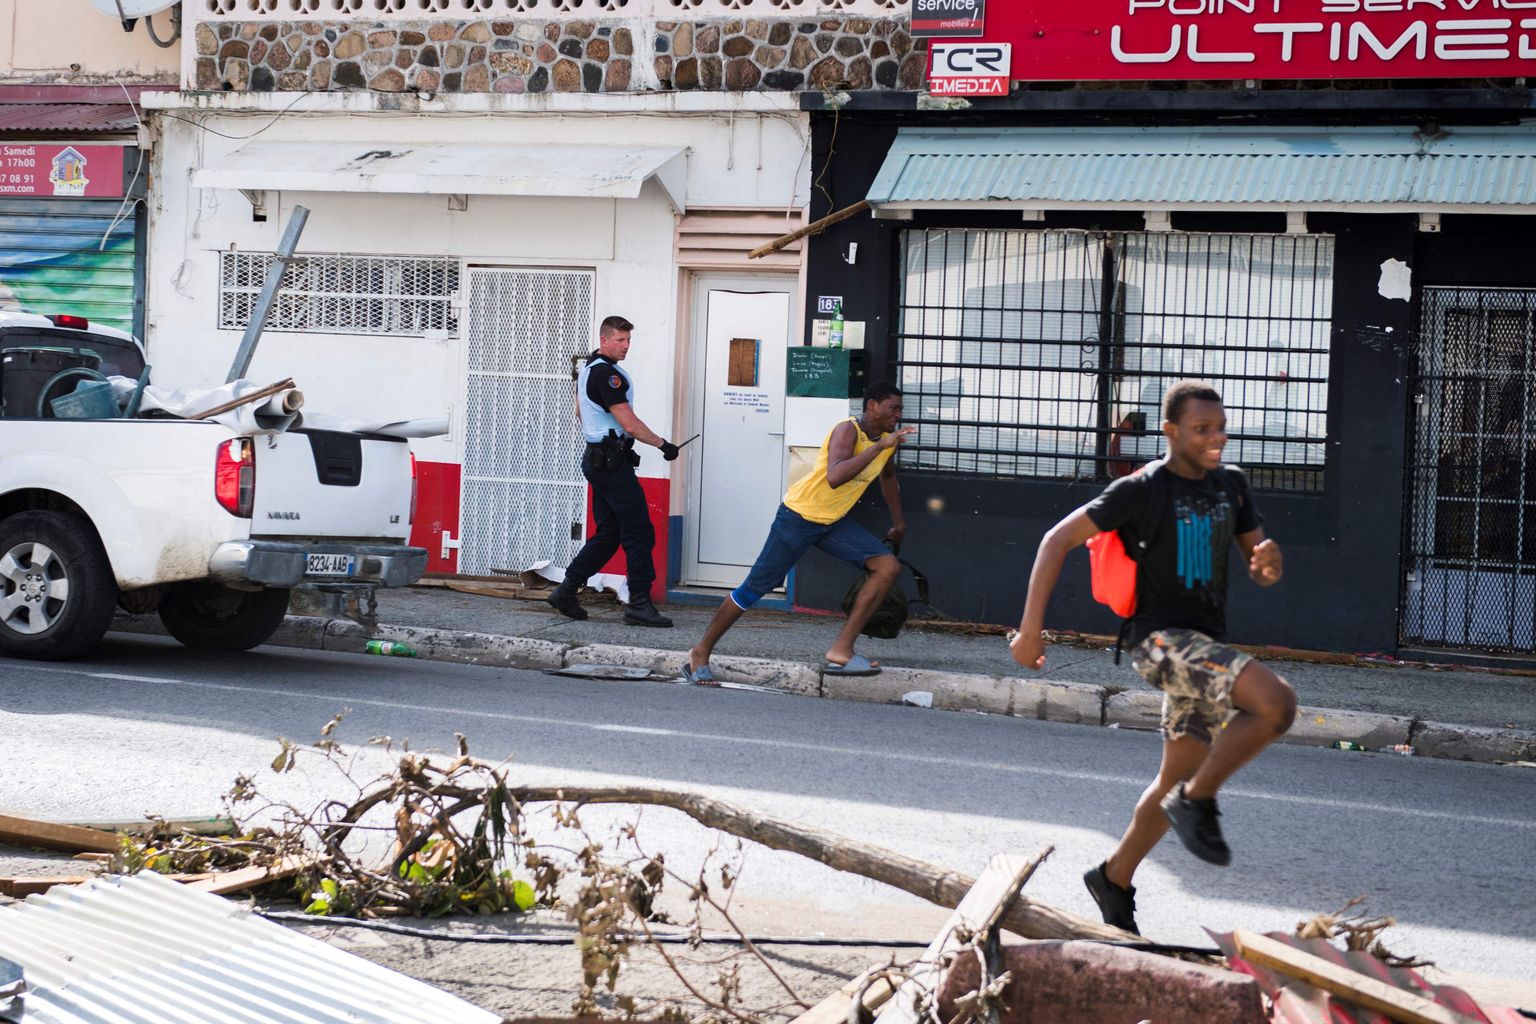 Saint-Martini saarele abiks saadetud Prantsuse sõjaväepolitsei peletab eemale orkaanist räsitud piirkonda rüüstavaid vandaalitsejaid.